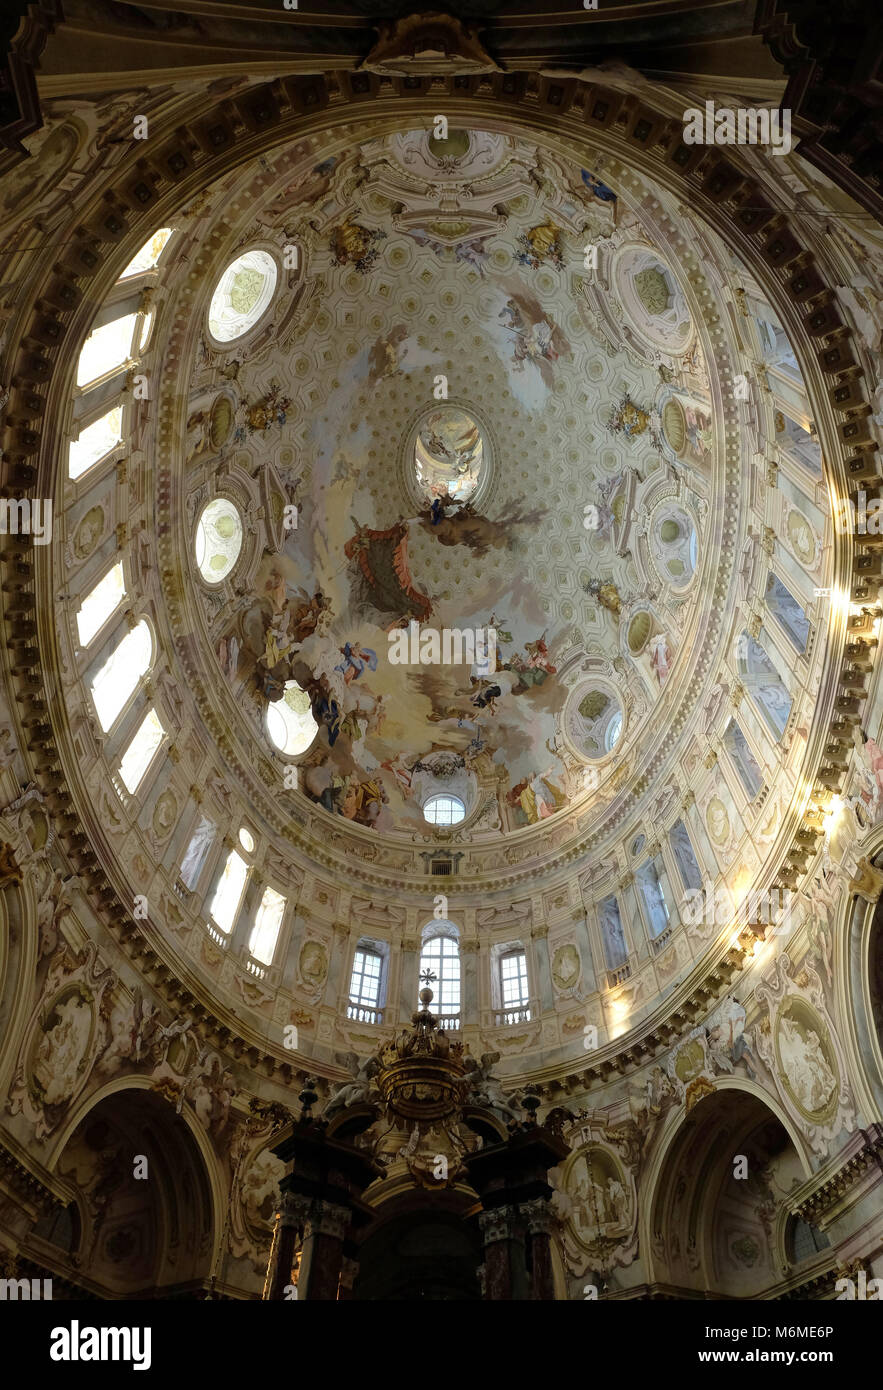 Interior of Basilica Sanctuary Regina Montis Regalis in Vicoforte,looking up at elliptical dome, Italy Stock Photo